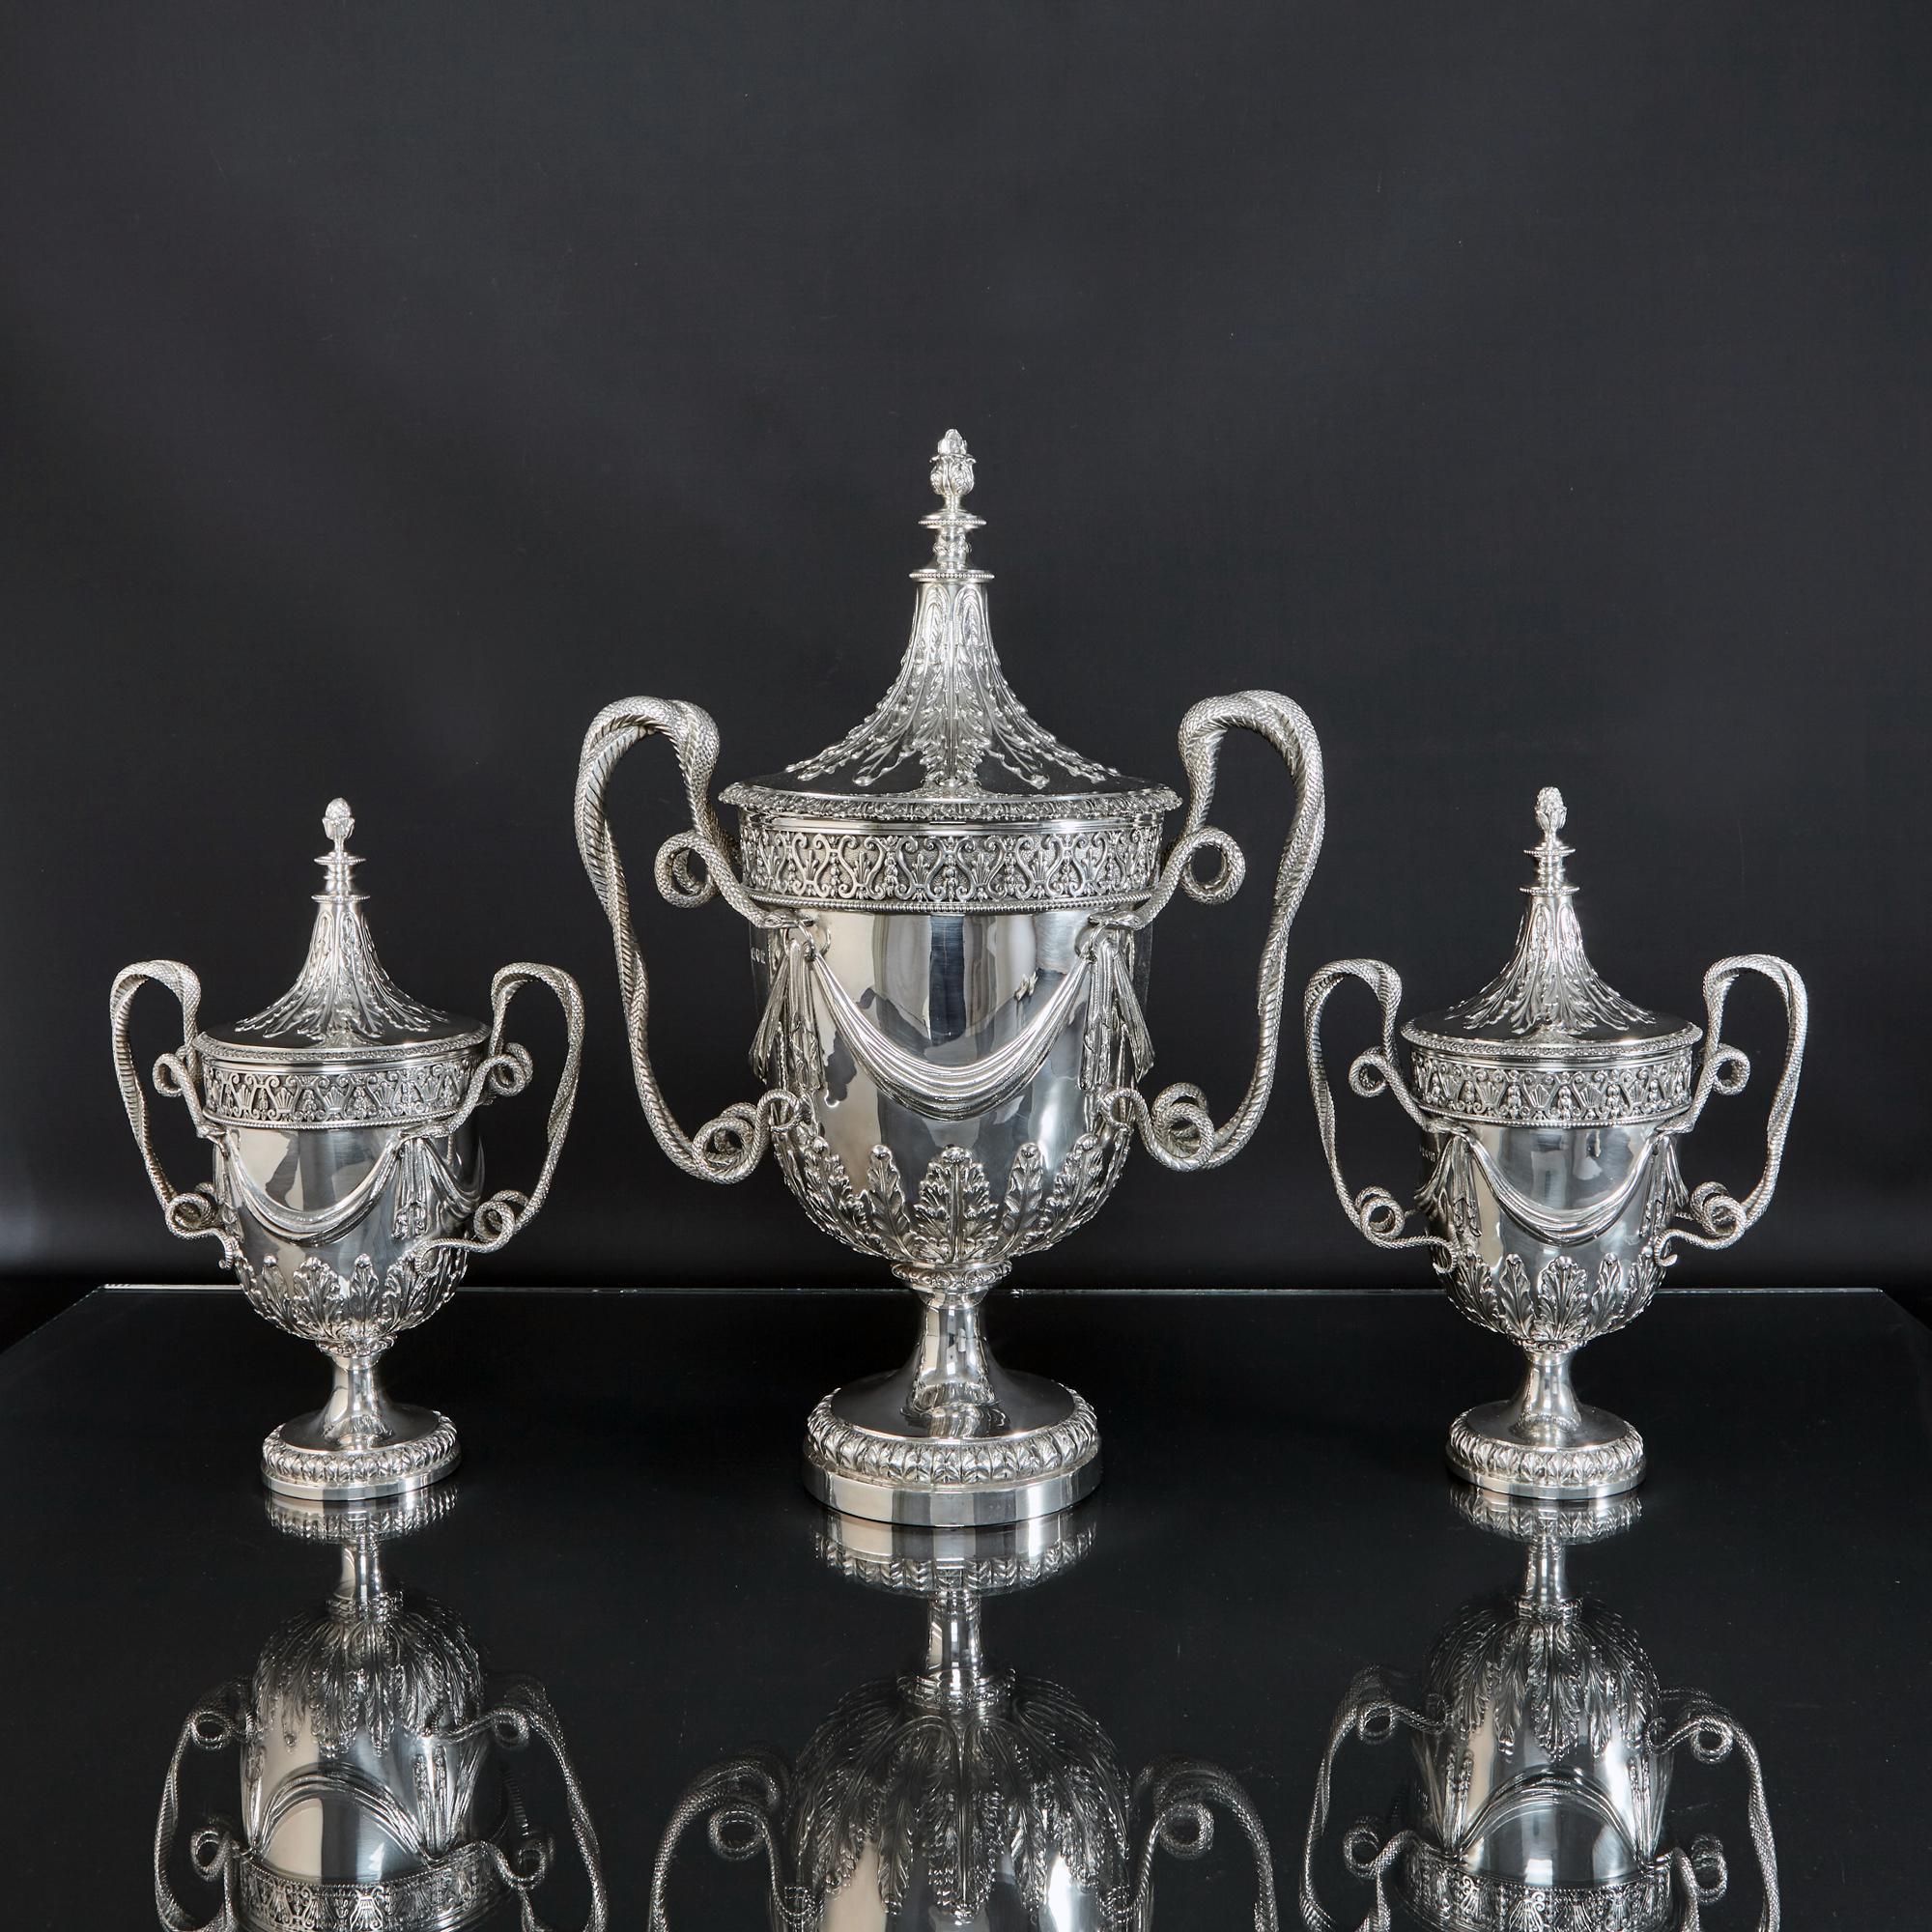 Un ensemble spectaculaire de trois coupes à trophée en argent dans le style George III, une plus grande et une paire de plus petites. Chacun d'entre eux possède un couvercle amovible orné de feuilles d'acanthe ciselées à la main, une décoration que